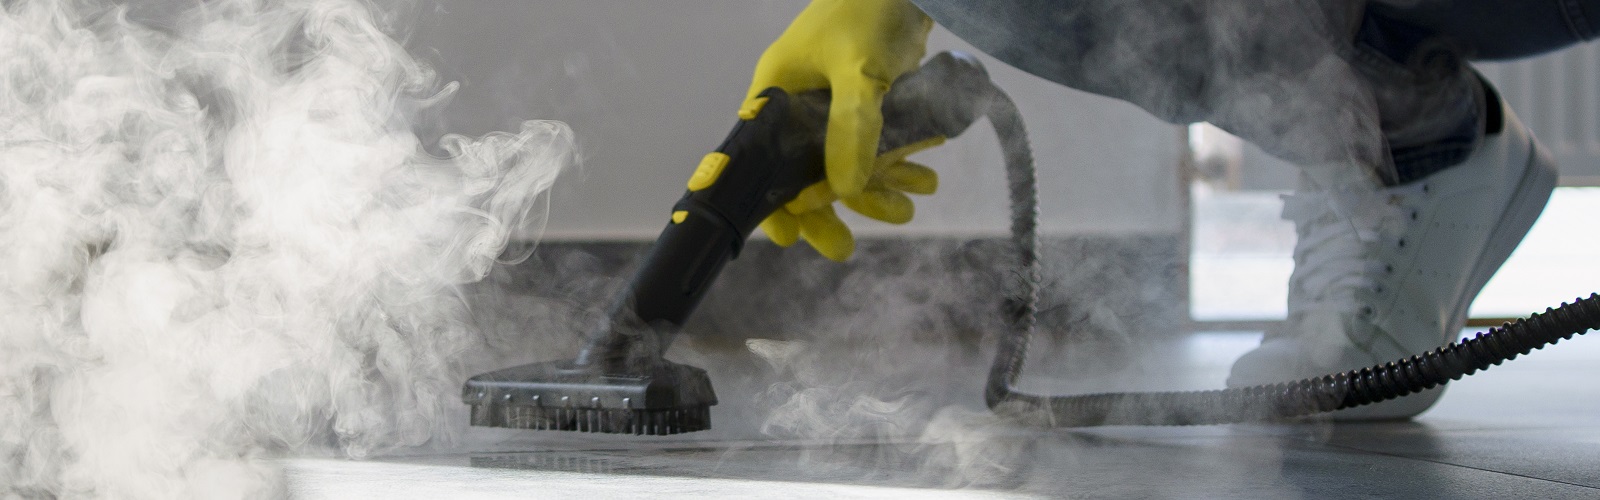 شرکت ميرزايي تجهيز کيش واردکننده انواع لوازم نظافتی مکانیزه و جديد با بهترين قيمت و  بالاترين کيفيت در خدمت مشتريان گرامي مي باشد.